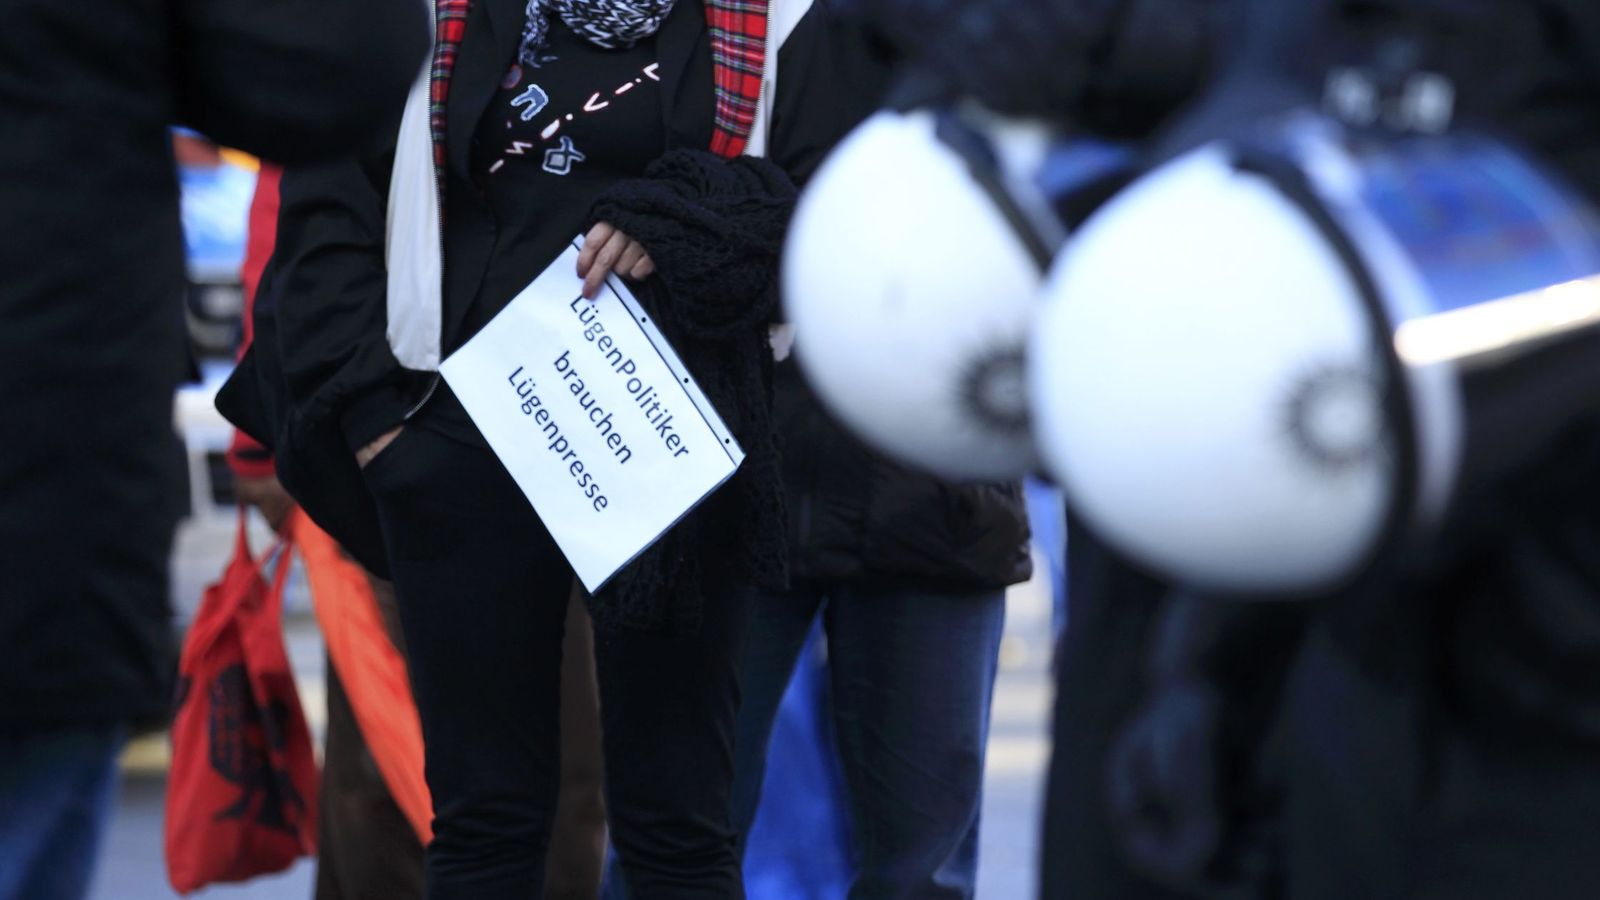 Foto: Una mujer enarbola un cartel que dice "Los políticos mentirosos necesitan una prensa mentirosa", durante una marcha de Pegida en Colonia, el 9 de enero de 2016 (Reuters)